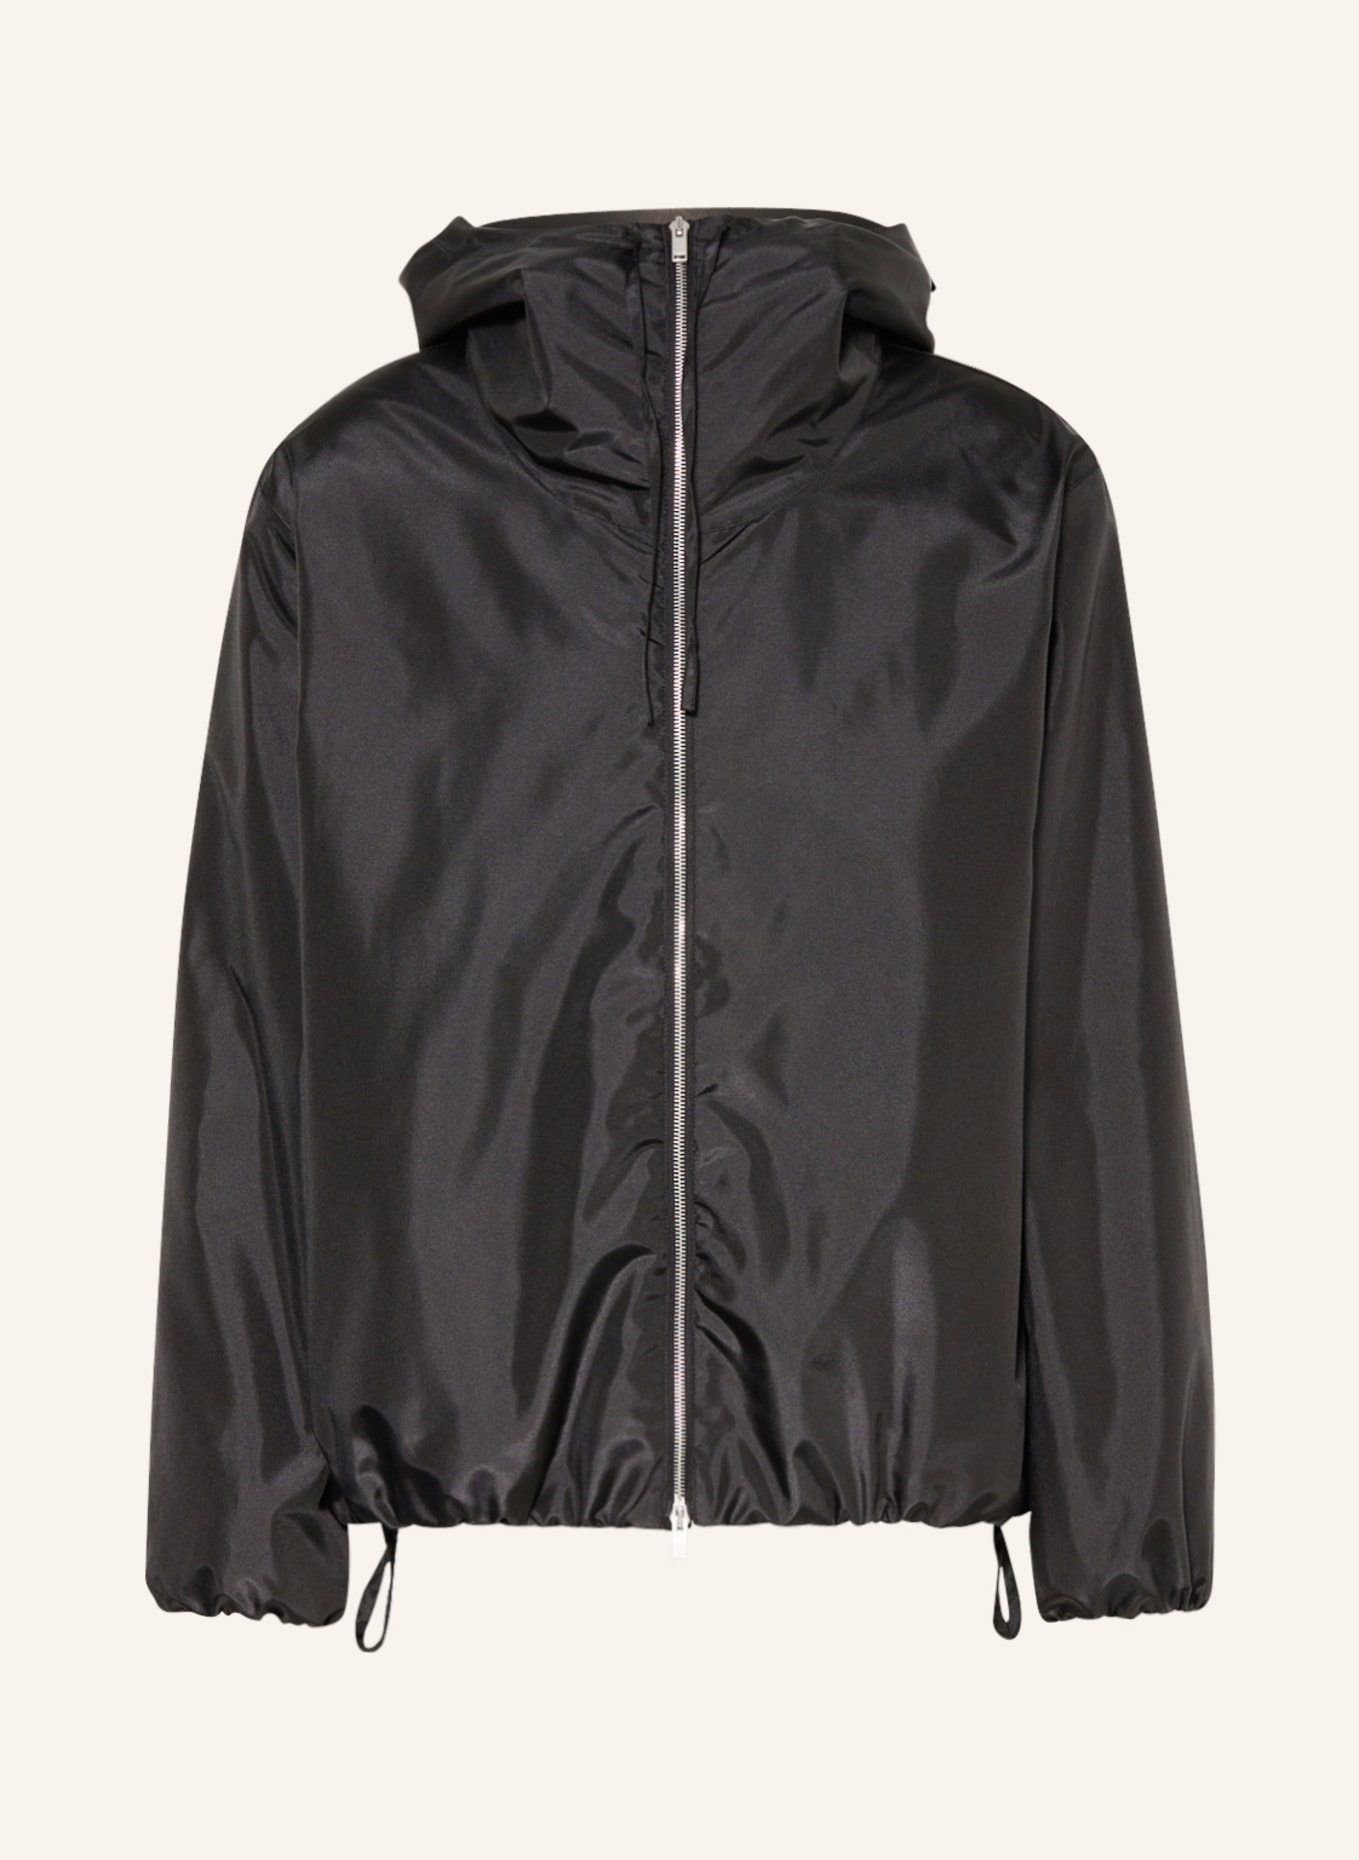 JIL SANDER Bomber jacket, Color: BLACK (Image 1)